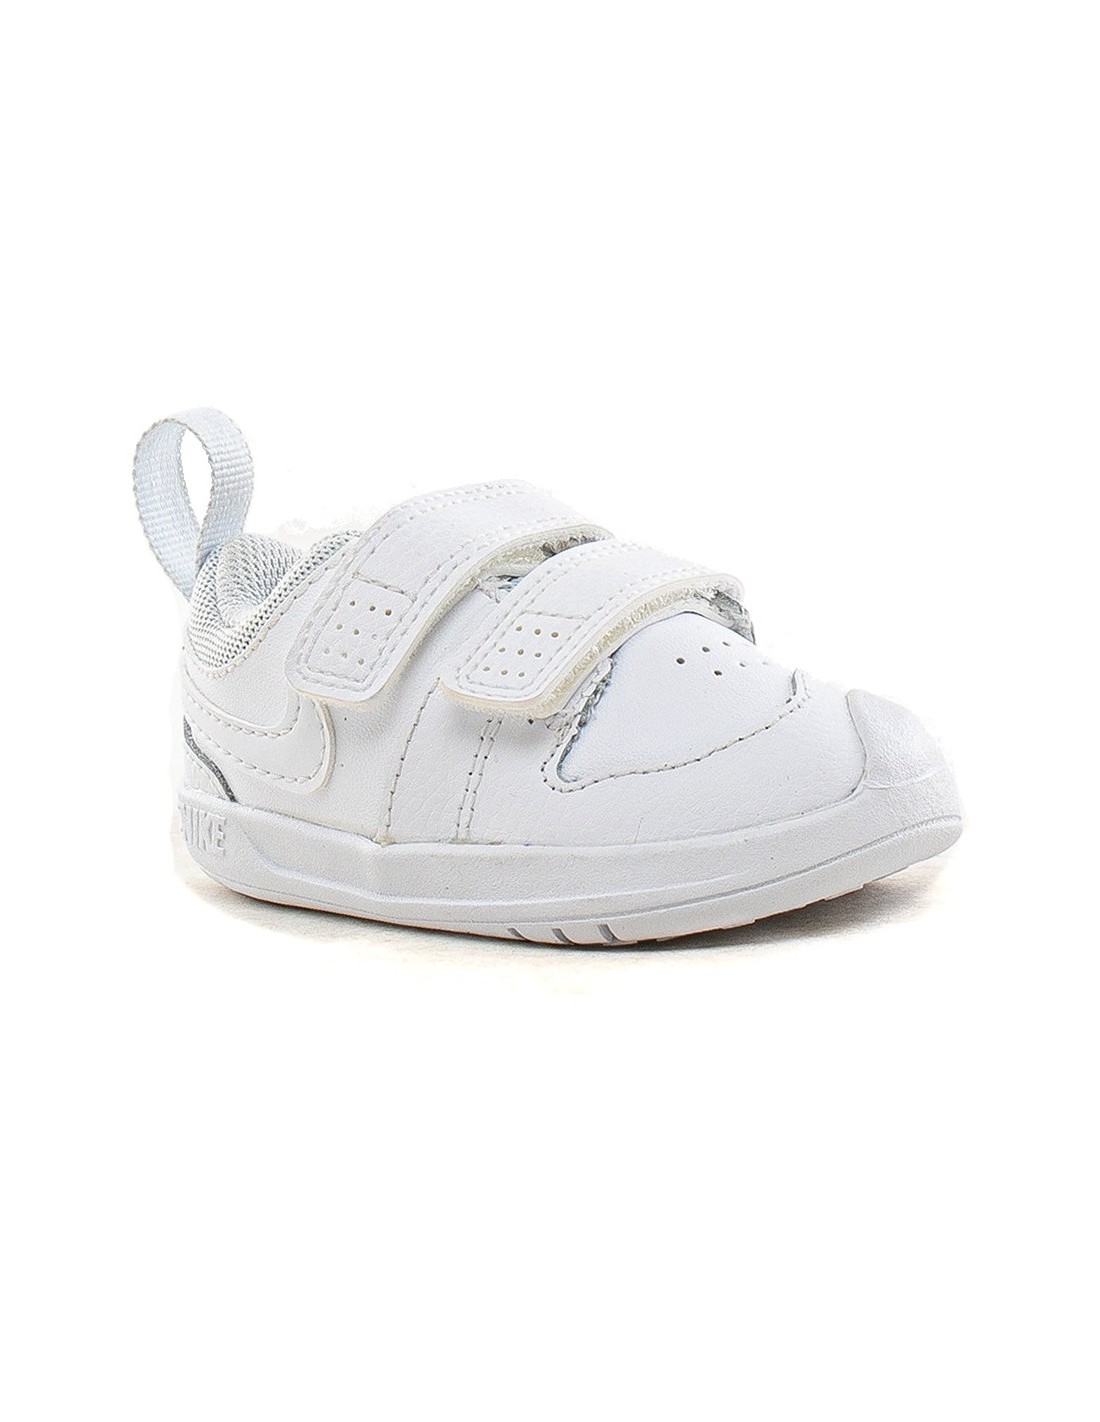 de bebé Nike Pico 5 blancas Ar4162-100 - Onda Sports